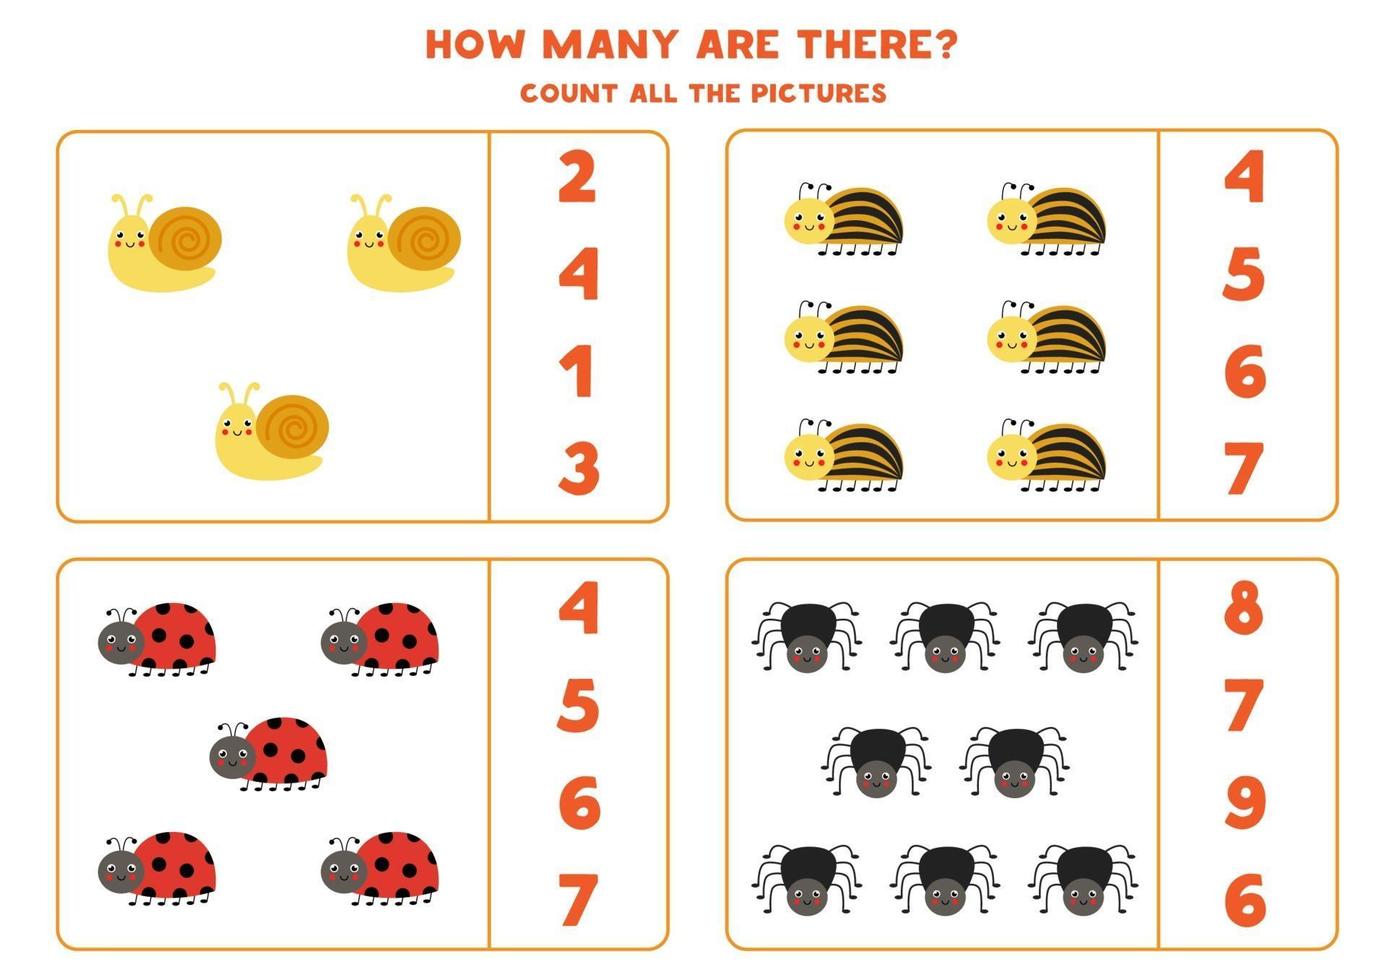 conte todos os insetos bonitos e circule as respostas corretas. jogo de matemática para crianças. vetor